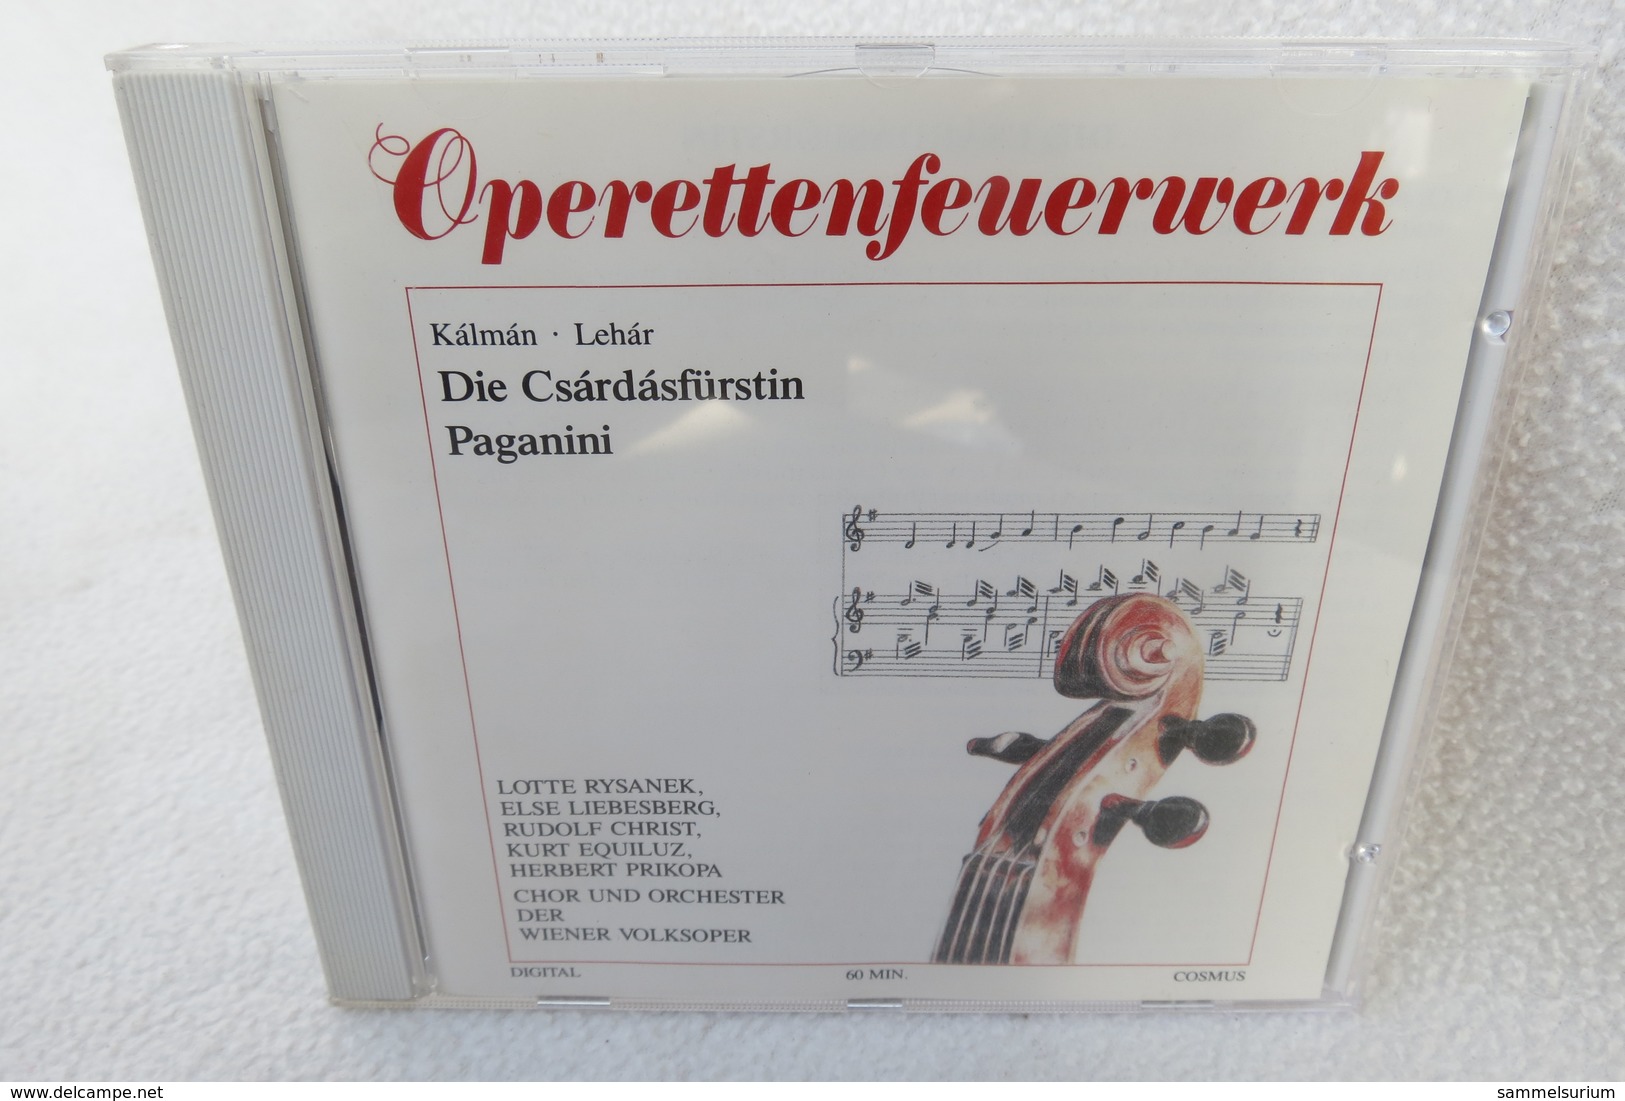 CD "Operettenfeuerwerk" Kálmán, Lehár - Opera / Operette